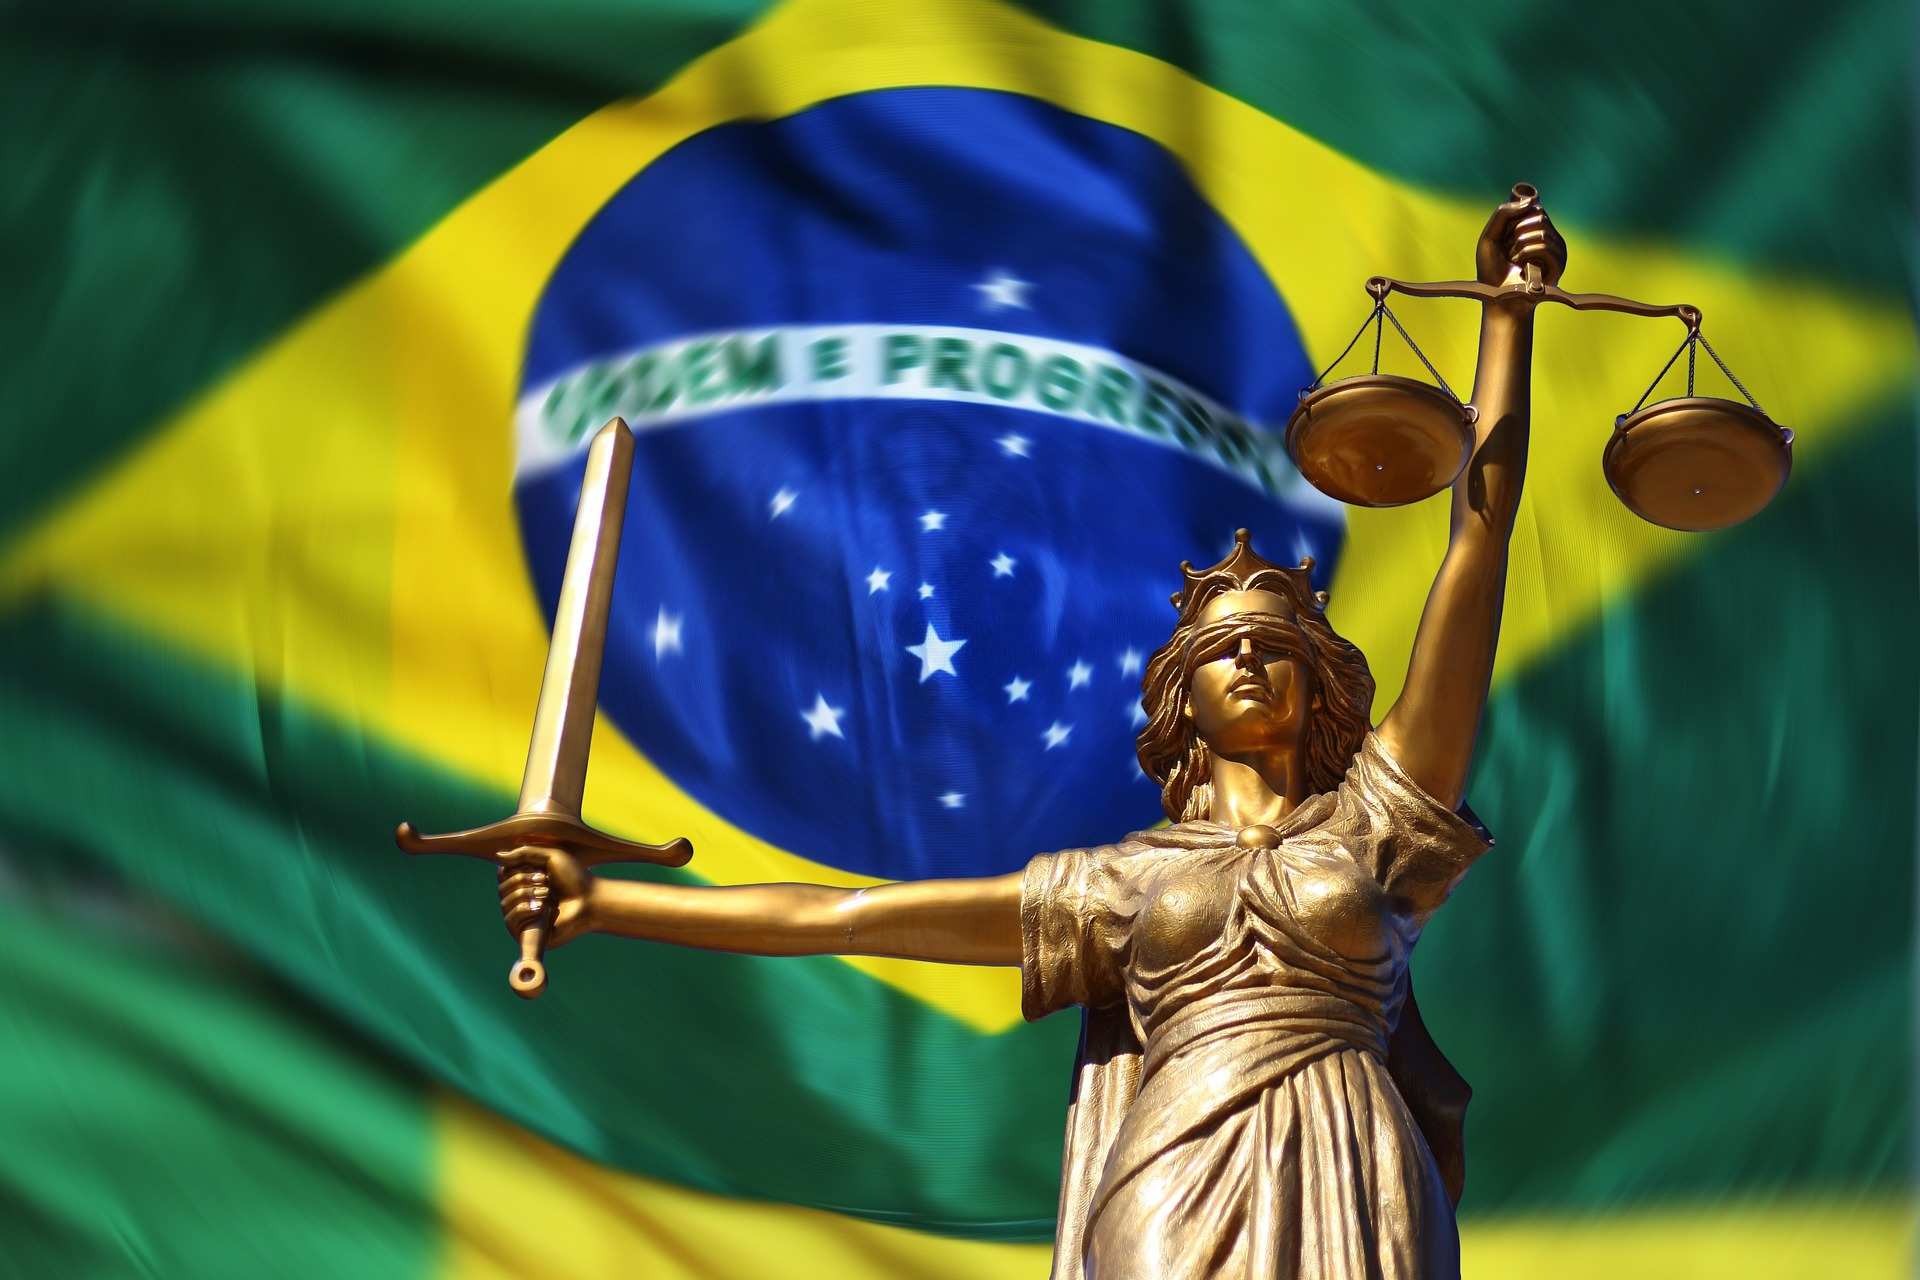 Brasilienwahlen (Foto: Gerd Altmann, pixabay)